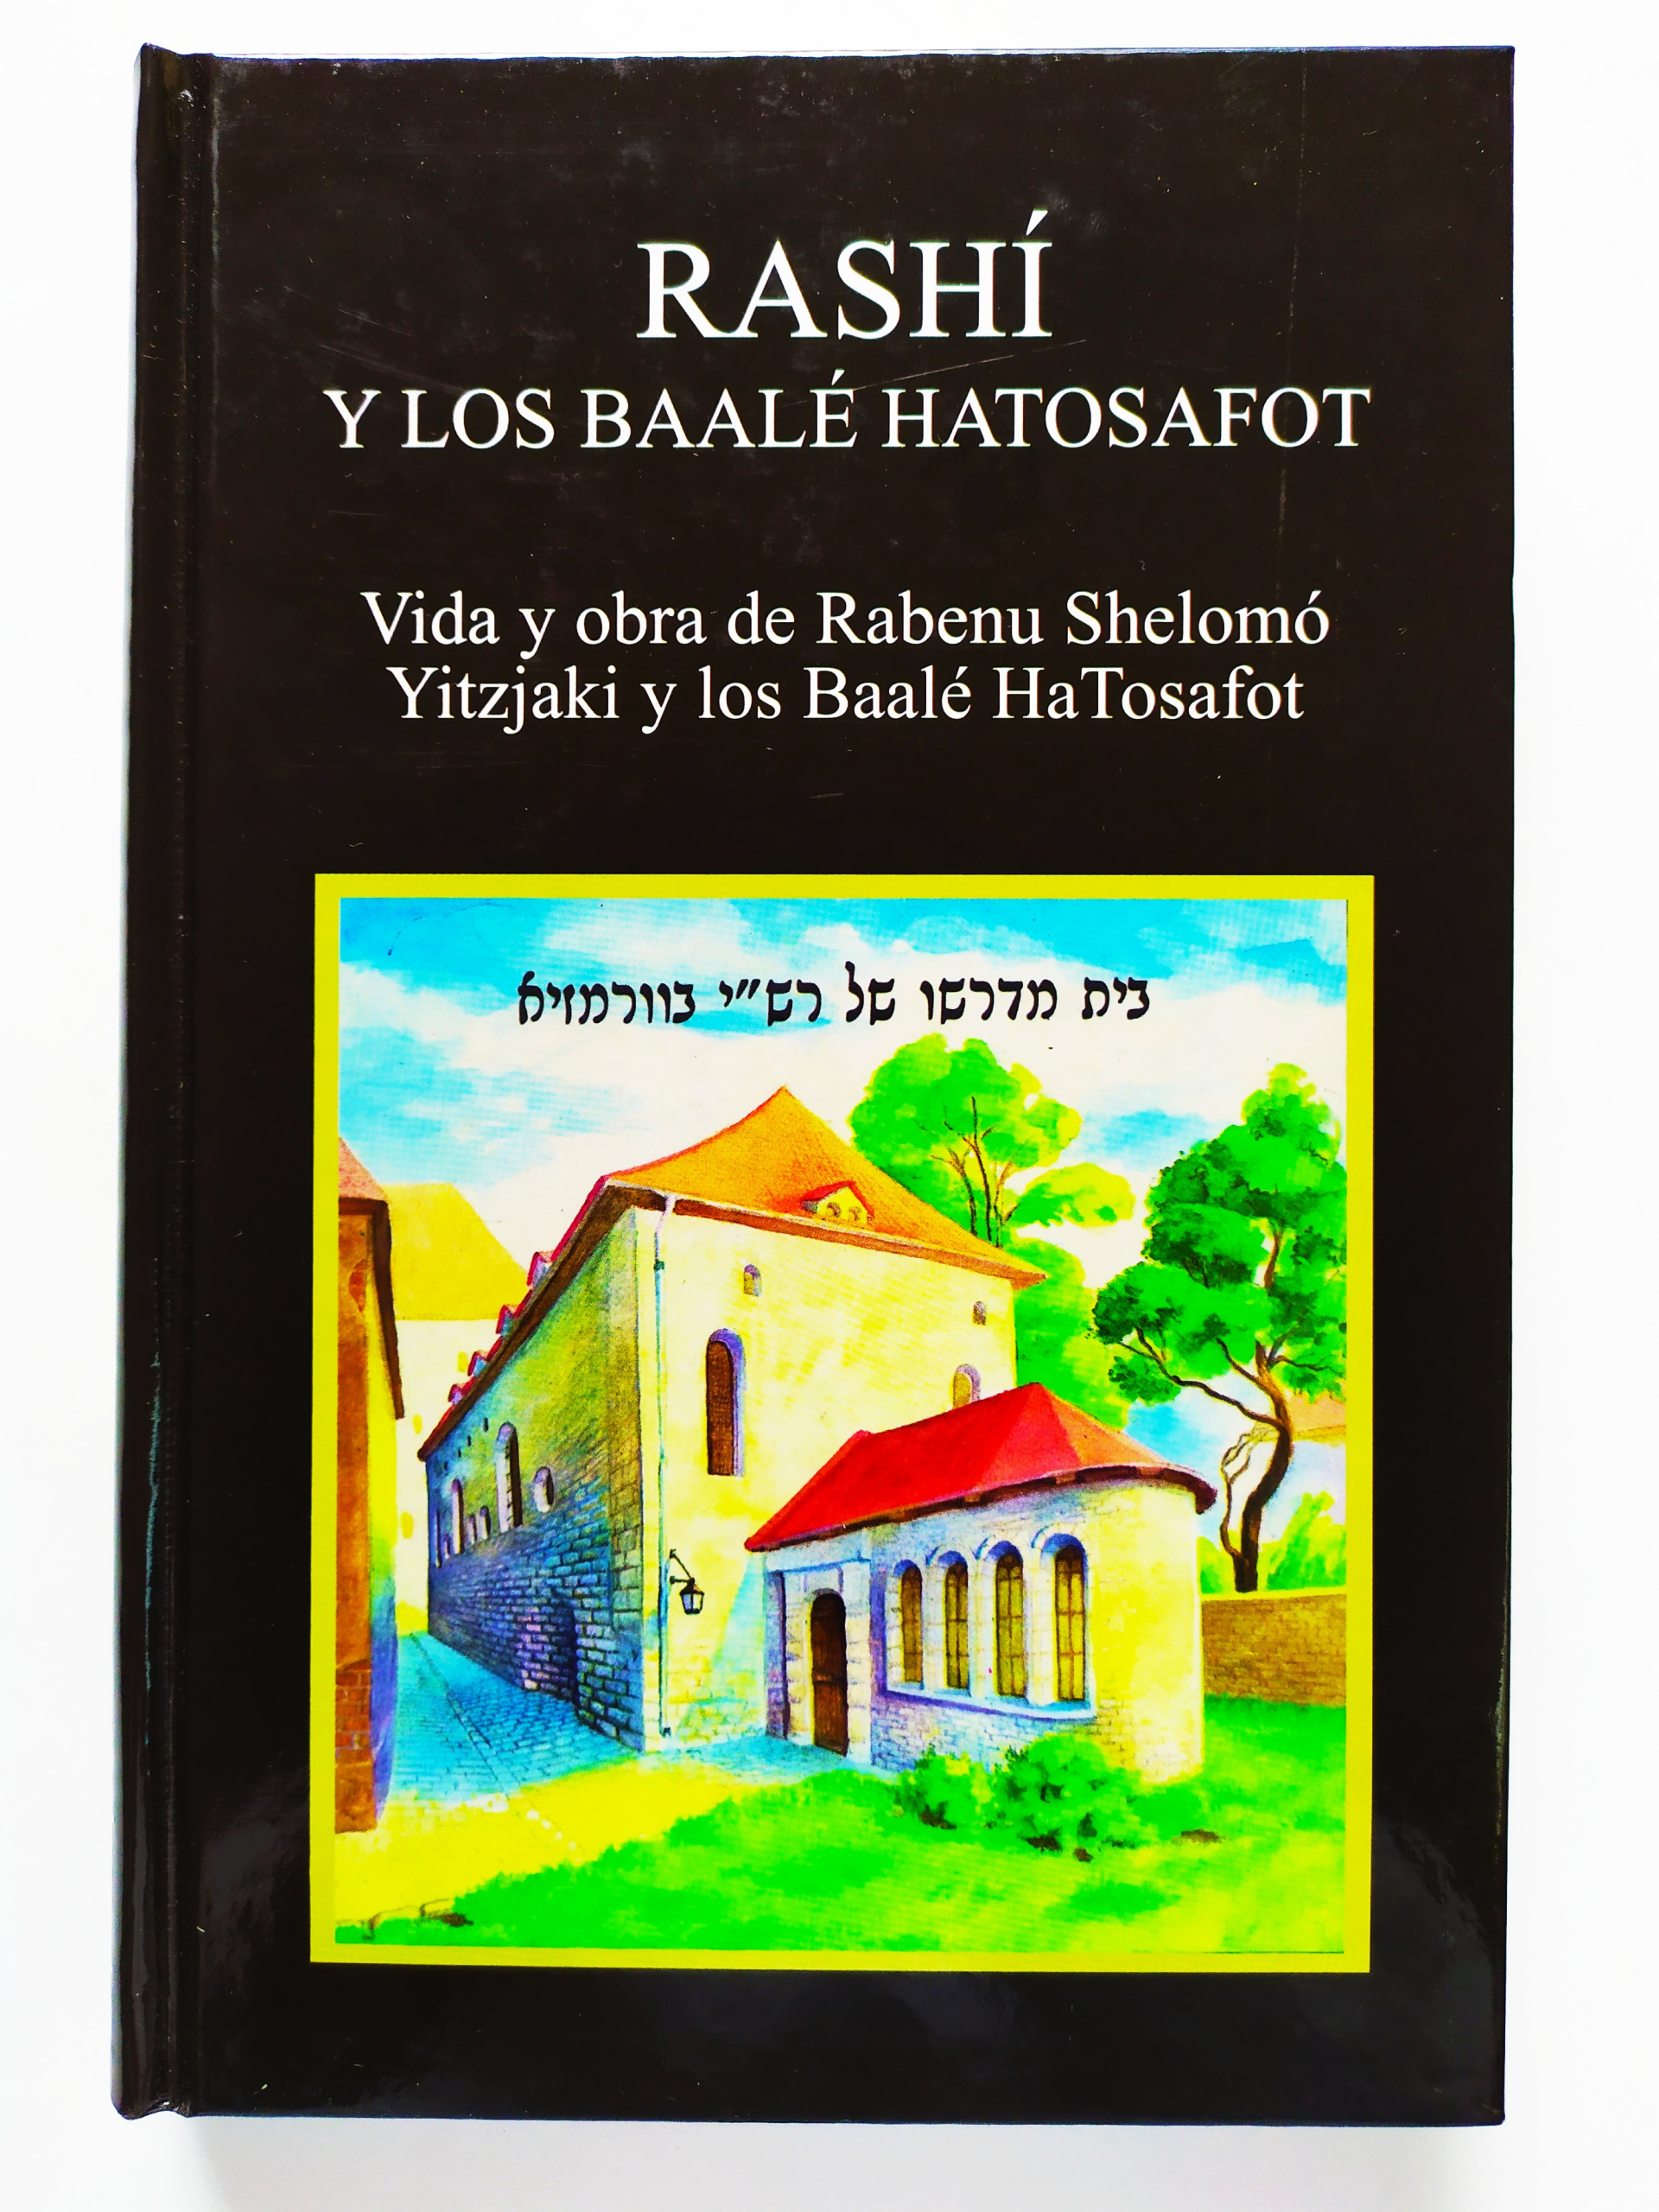 Rashi y los baale hatosafot: vida y obra de Rabenu Shelomo Yitzjaki y los baale